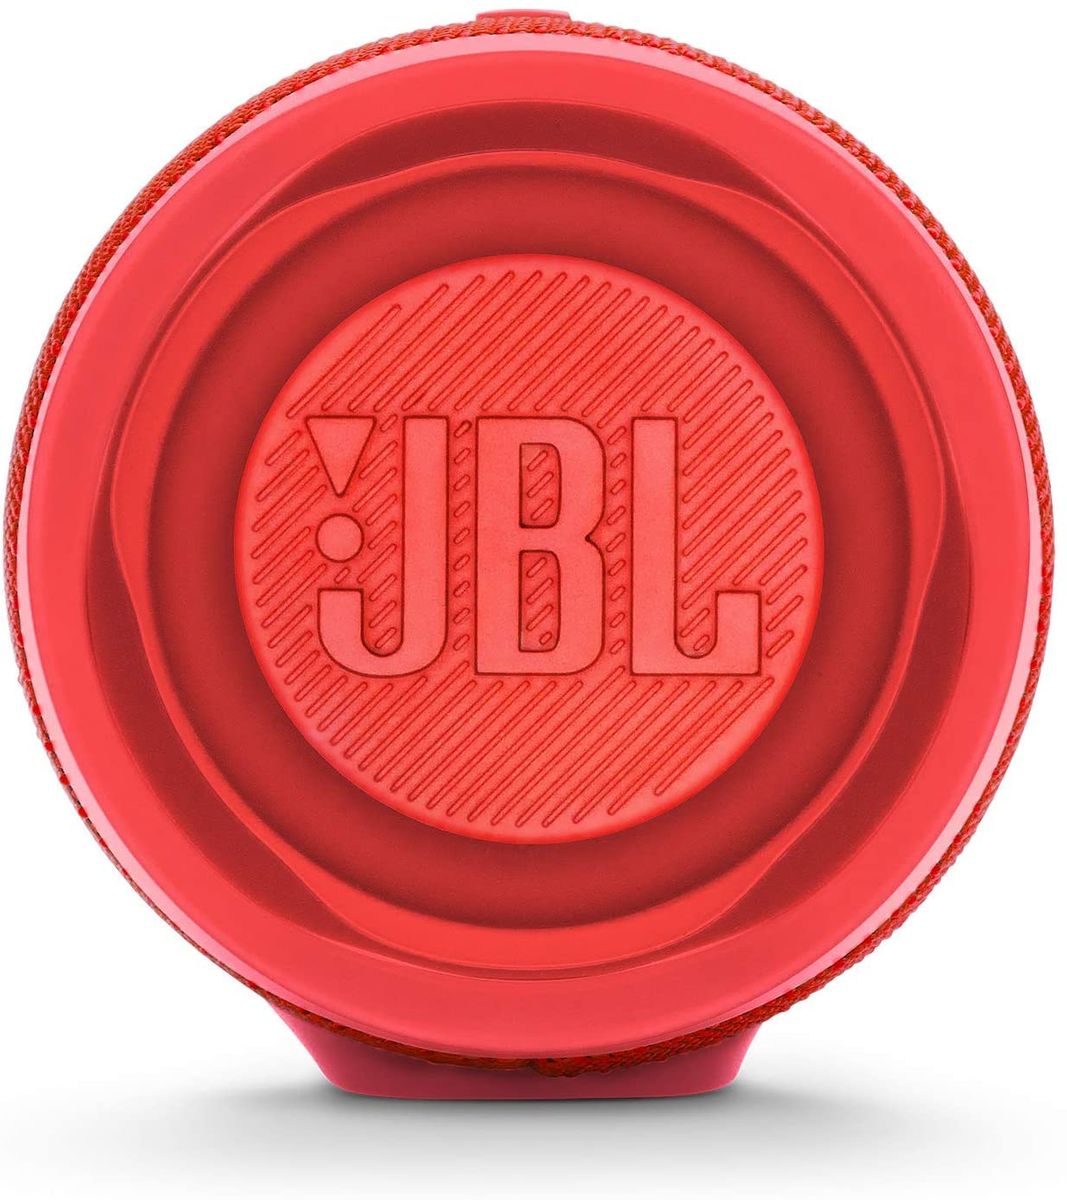 JBL Charge 4 Wasserdichter Bluetooth-Lautsprecher mit Powerbank